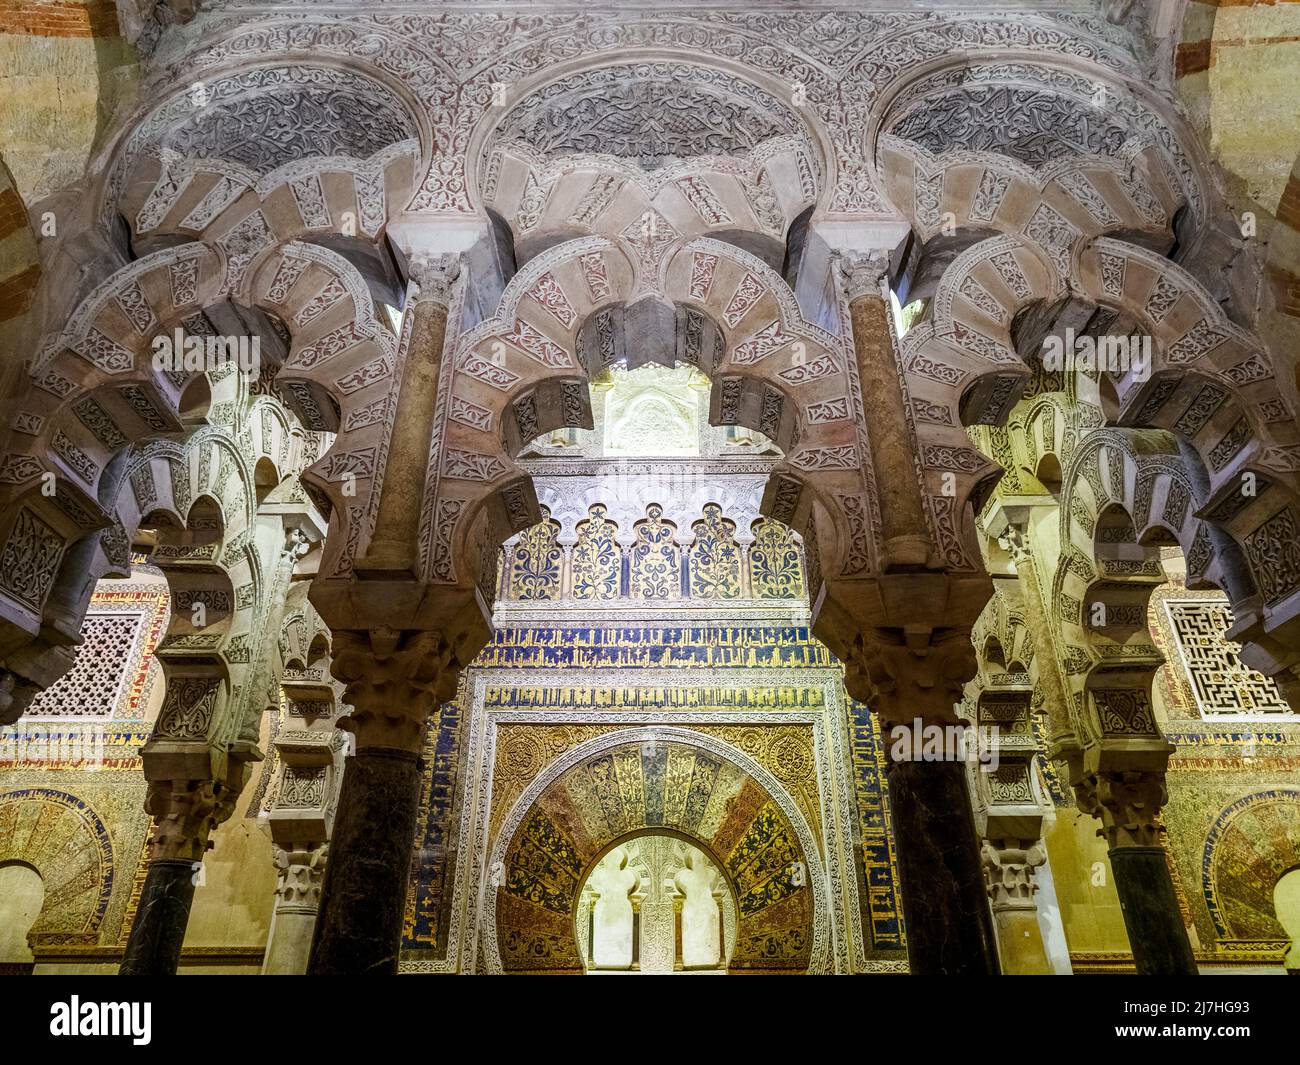 Das mosaikverzierte Mihrab (Mitte) und die verschränken Bögen der Maqsura (links und rechts) in der Erweiterung, die von al-Hakam II. Nach 961 hinzugefügt wurde - Mezquita-Catedral (große Moschee von Cordoba) - Cordoba, Spanien Stockfoto